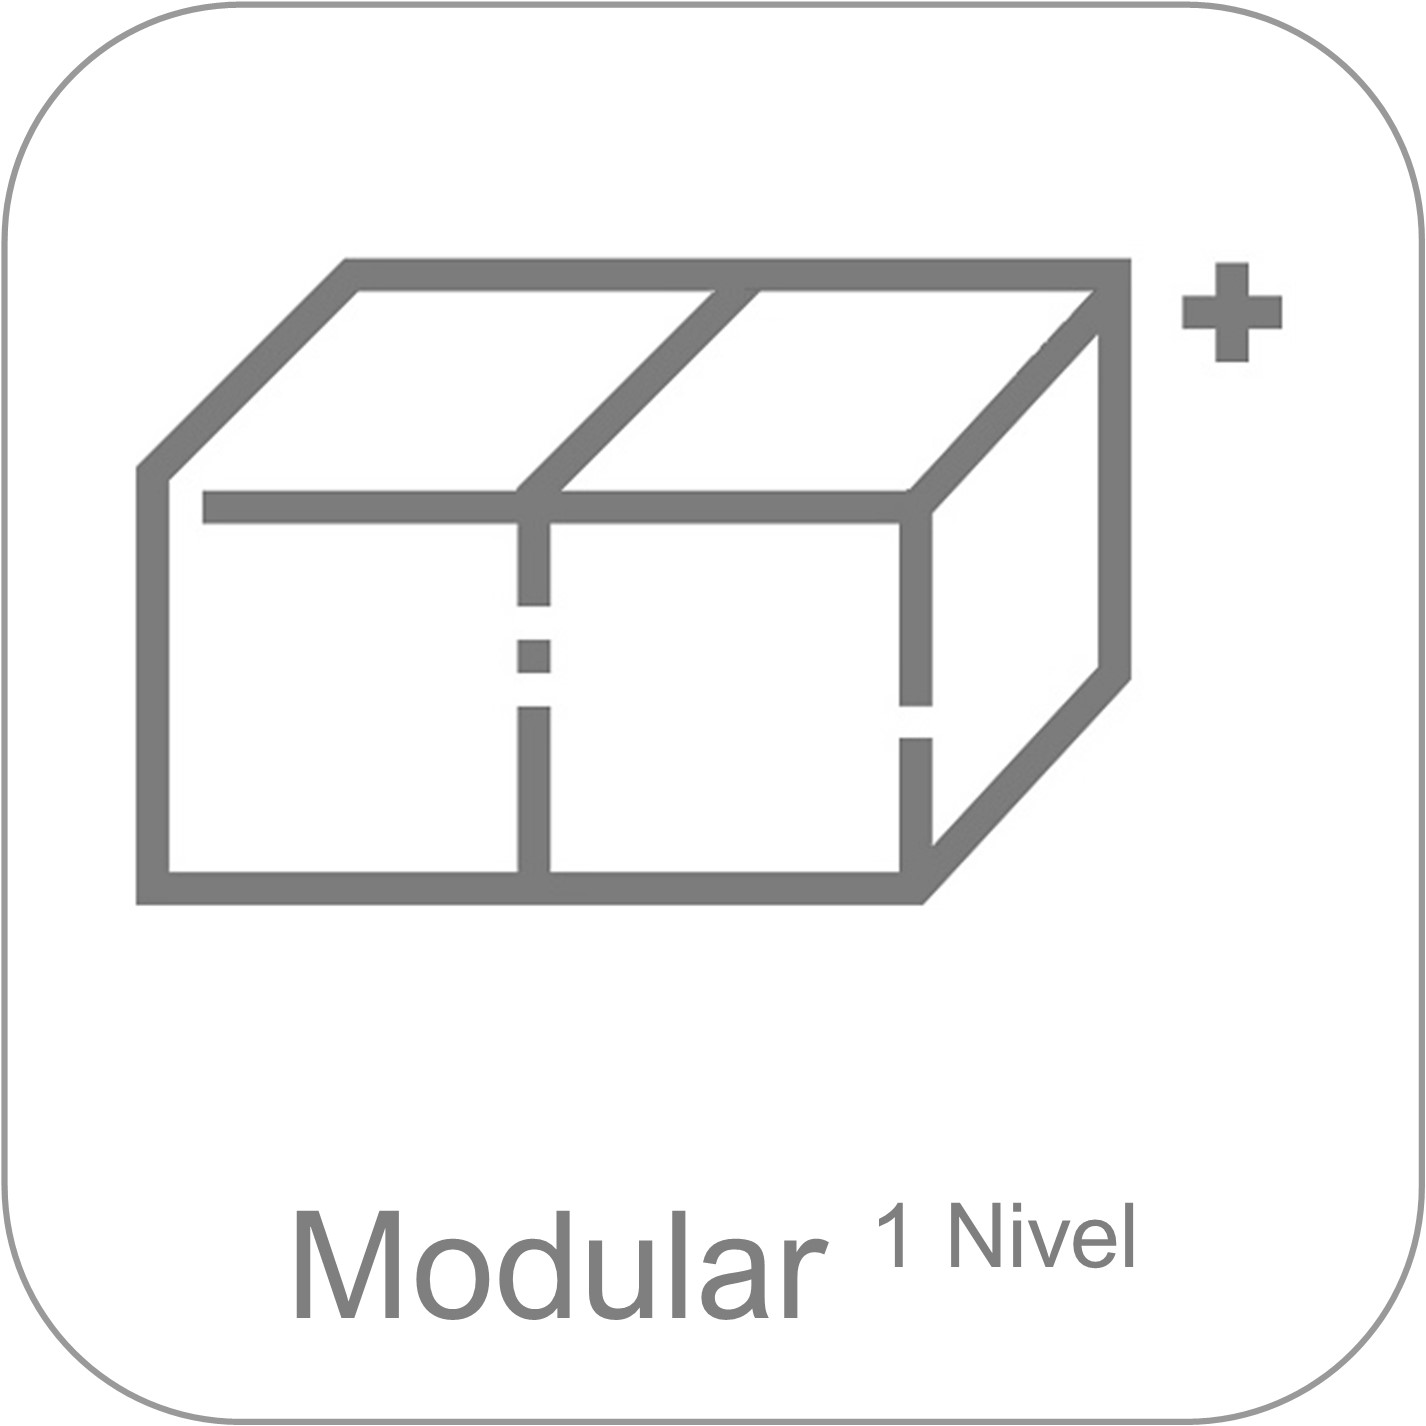 Monobloque CONTAINER - Bodega, almacén - Modular